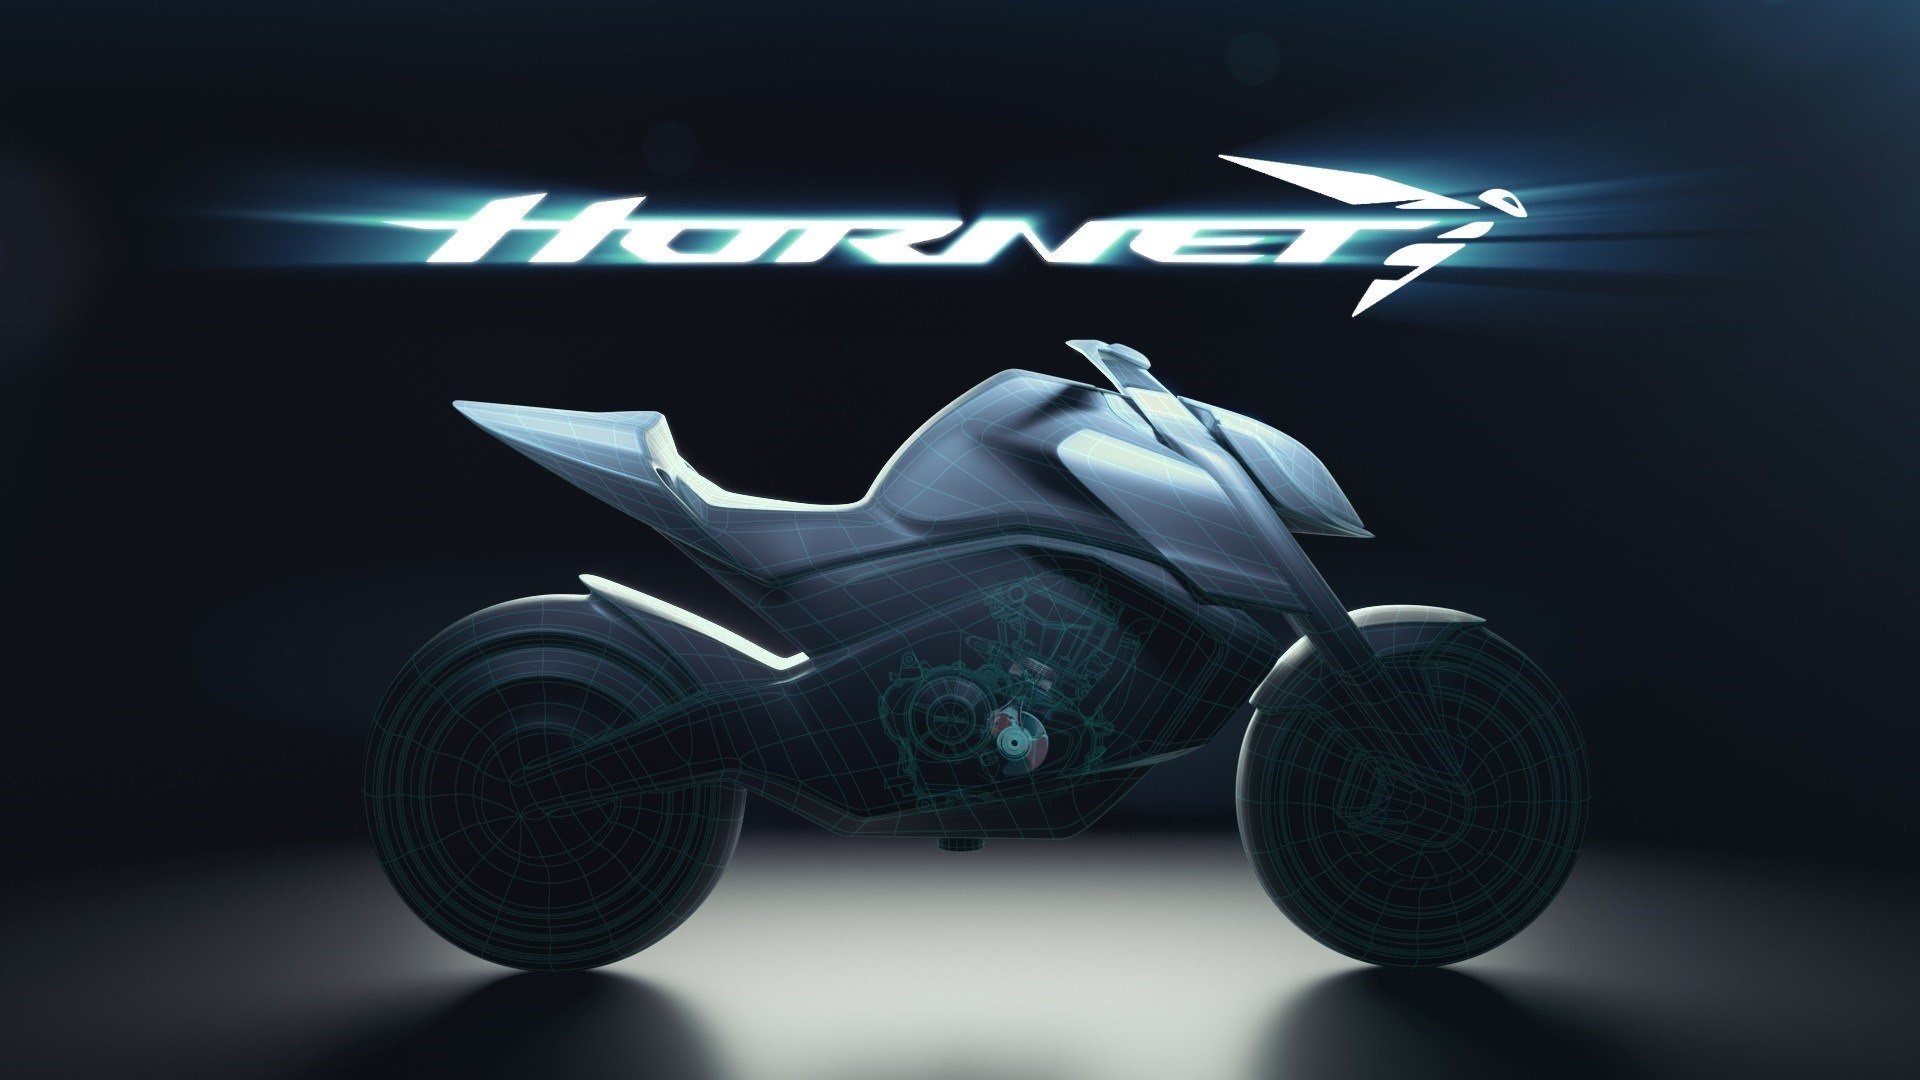 Honda apresenta nova Hornet elétrica, com desempenho comparável a motos a gasolina